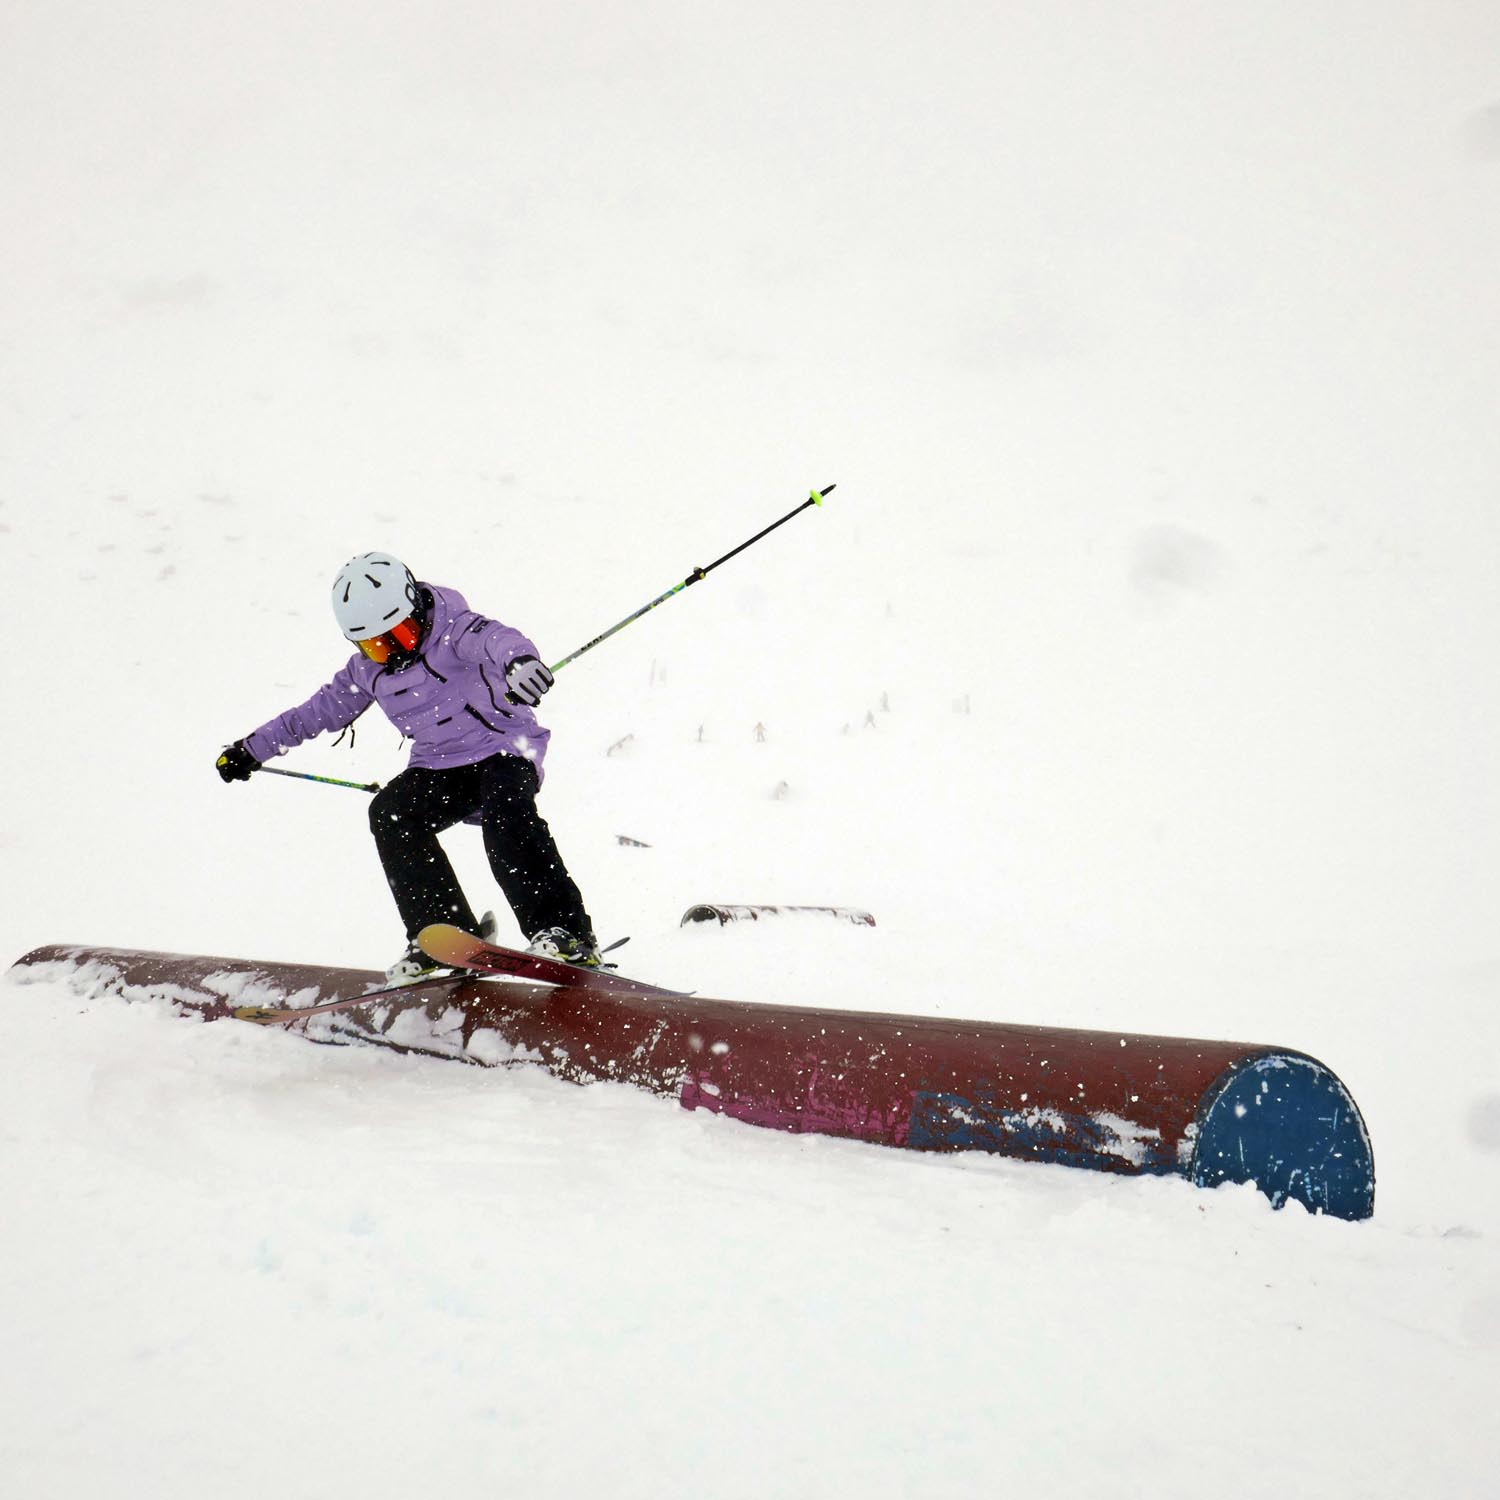 Trainingskurse für Ski und Snowboarder beim back on snow camp im Kaunertal. 